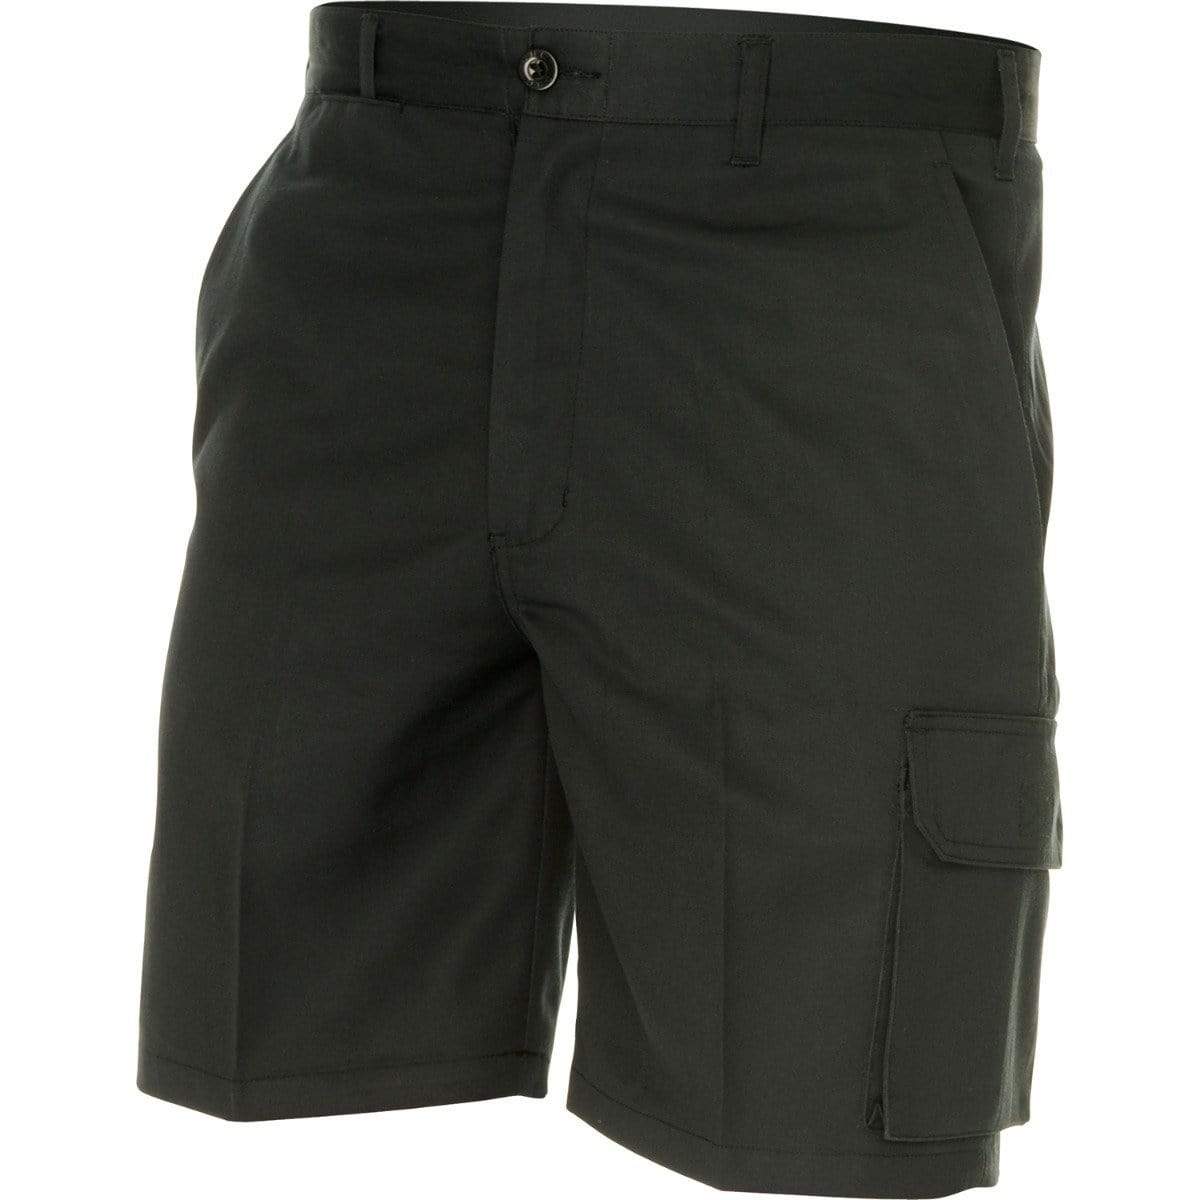 Dnc Workwear Permanent Press Cargo Shorts - 4503 Work Wear DNC Workwear Black 72R 